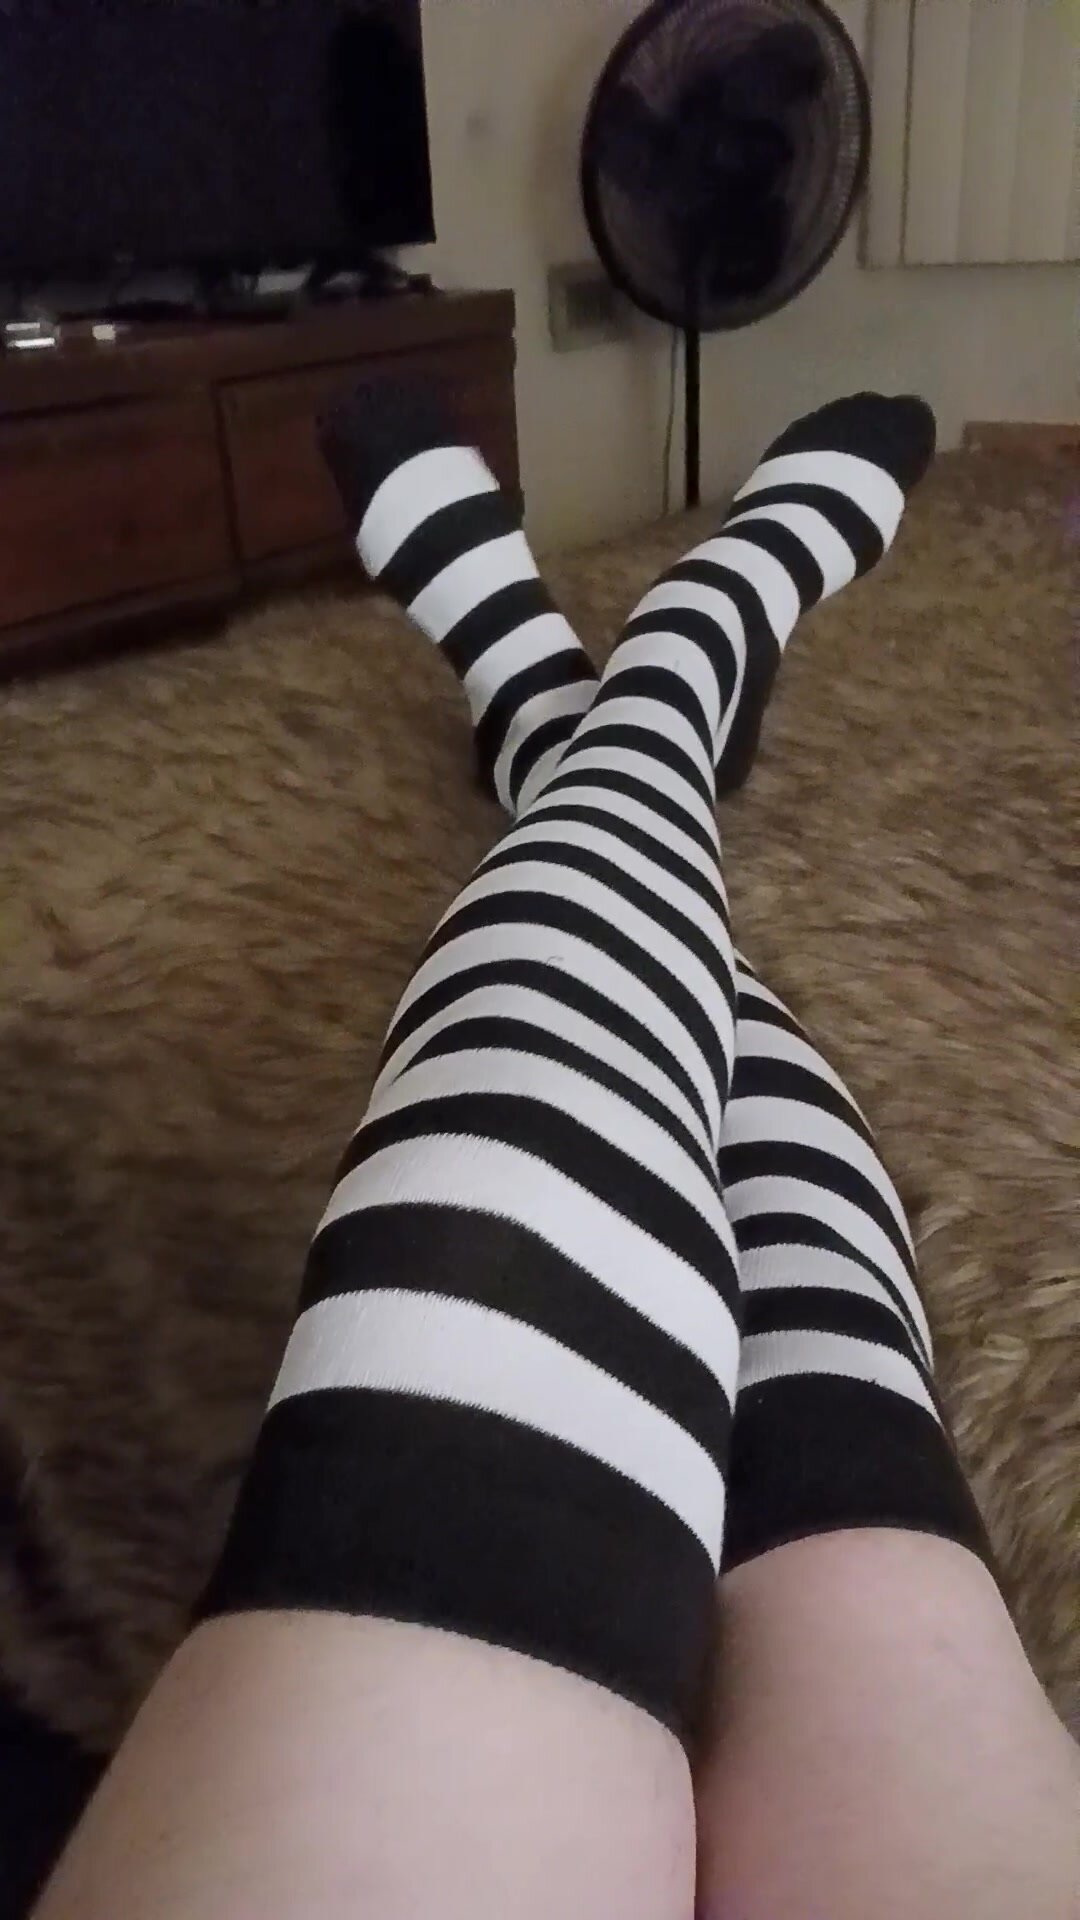 Sexy feet in zebra stockings